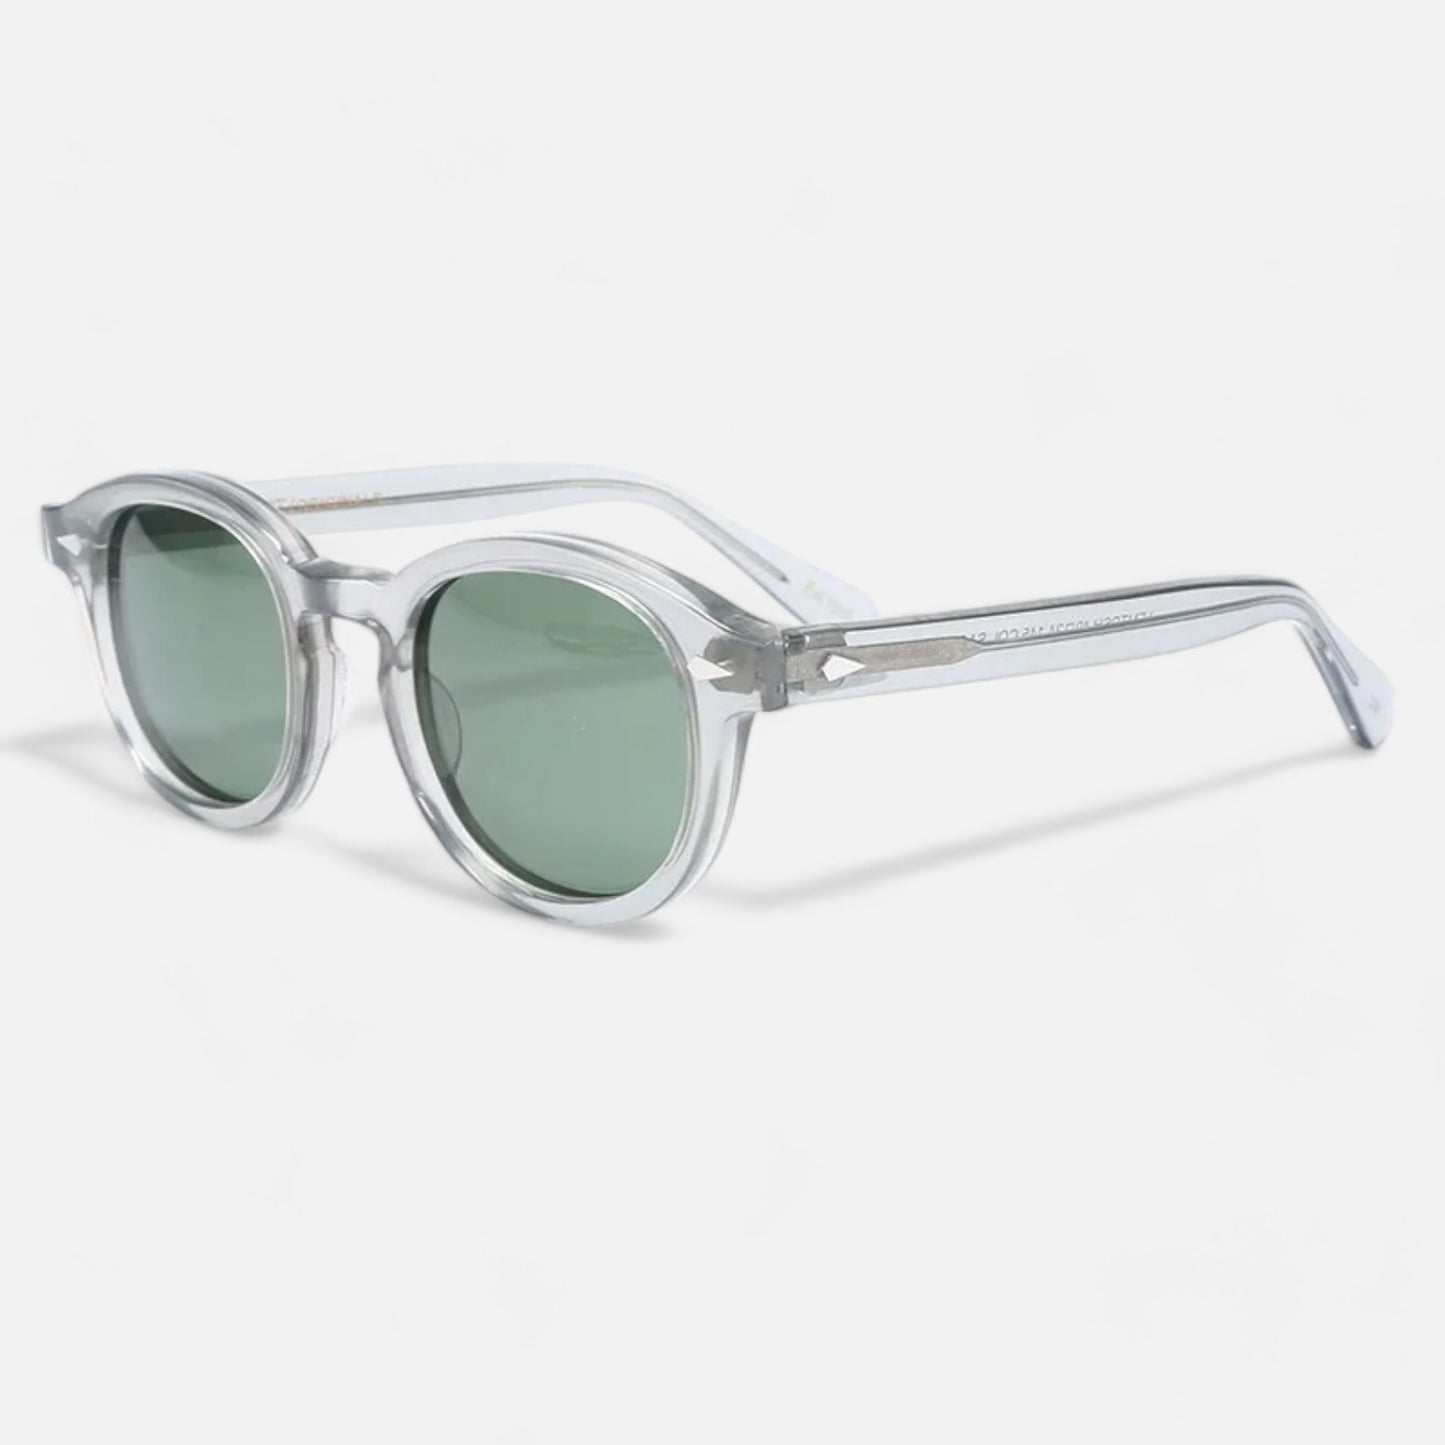 The Iapetus Sunglasses